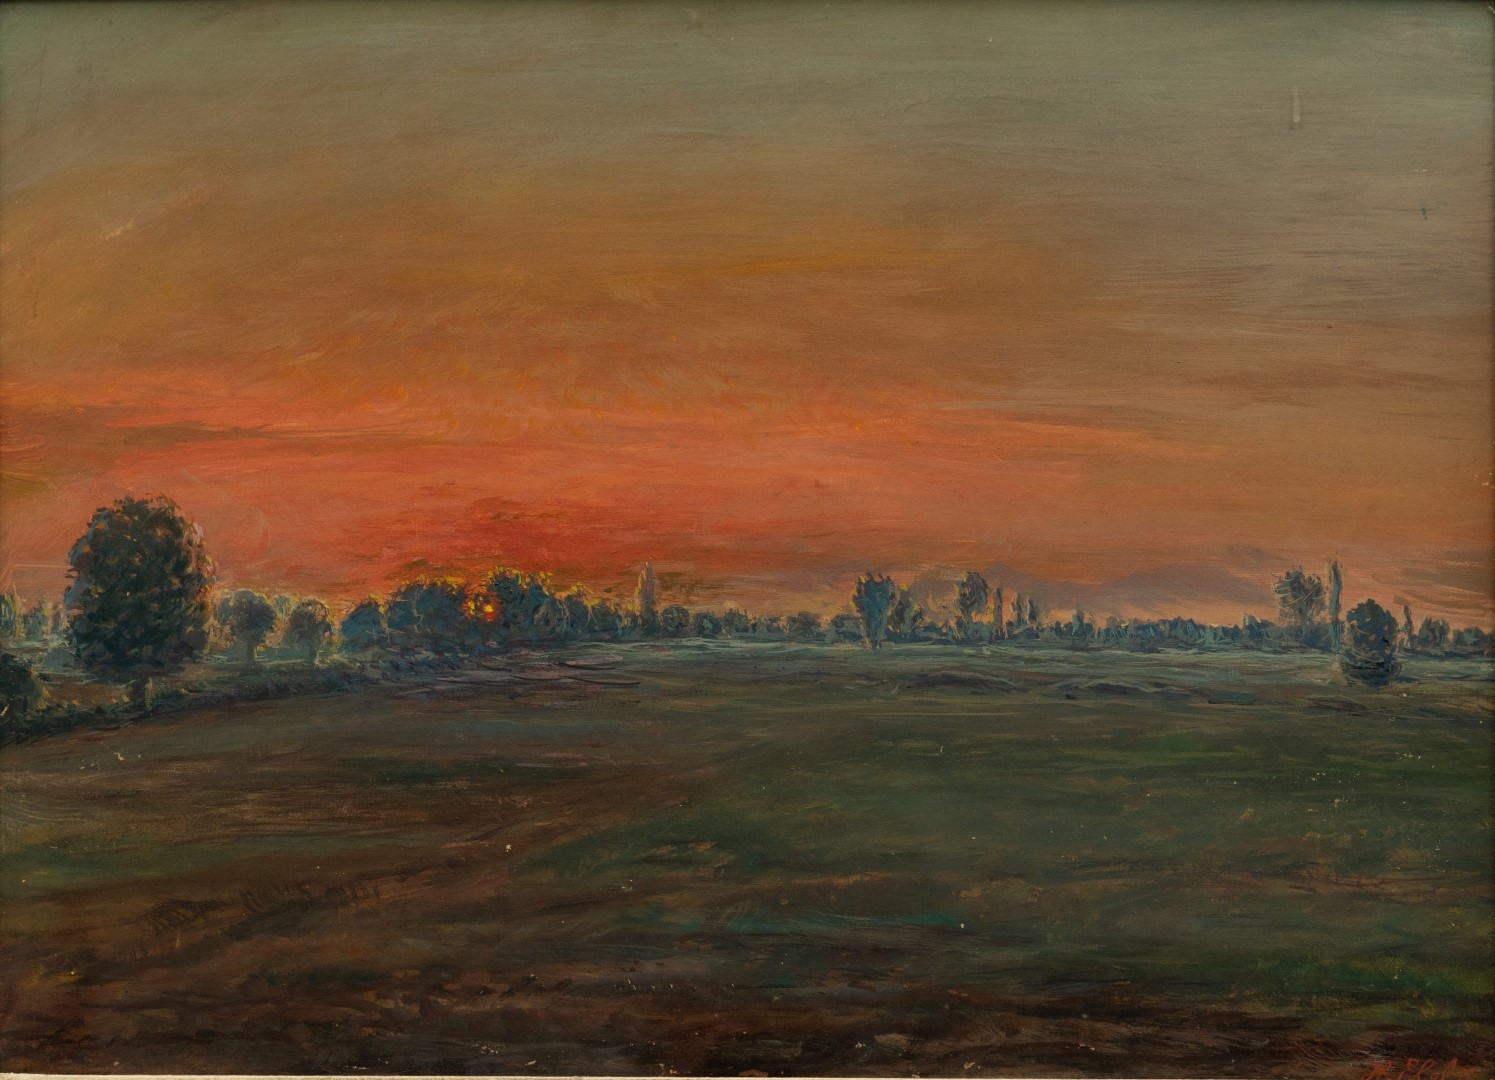 Coucher de soleil sur la plaine, 1910, tempera sur carton, 51x69 cm, collection particulière.